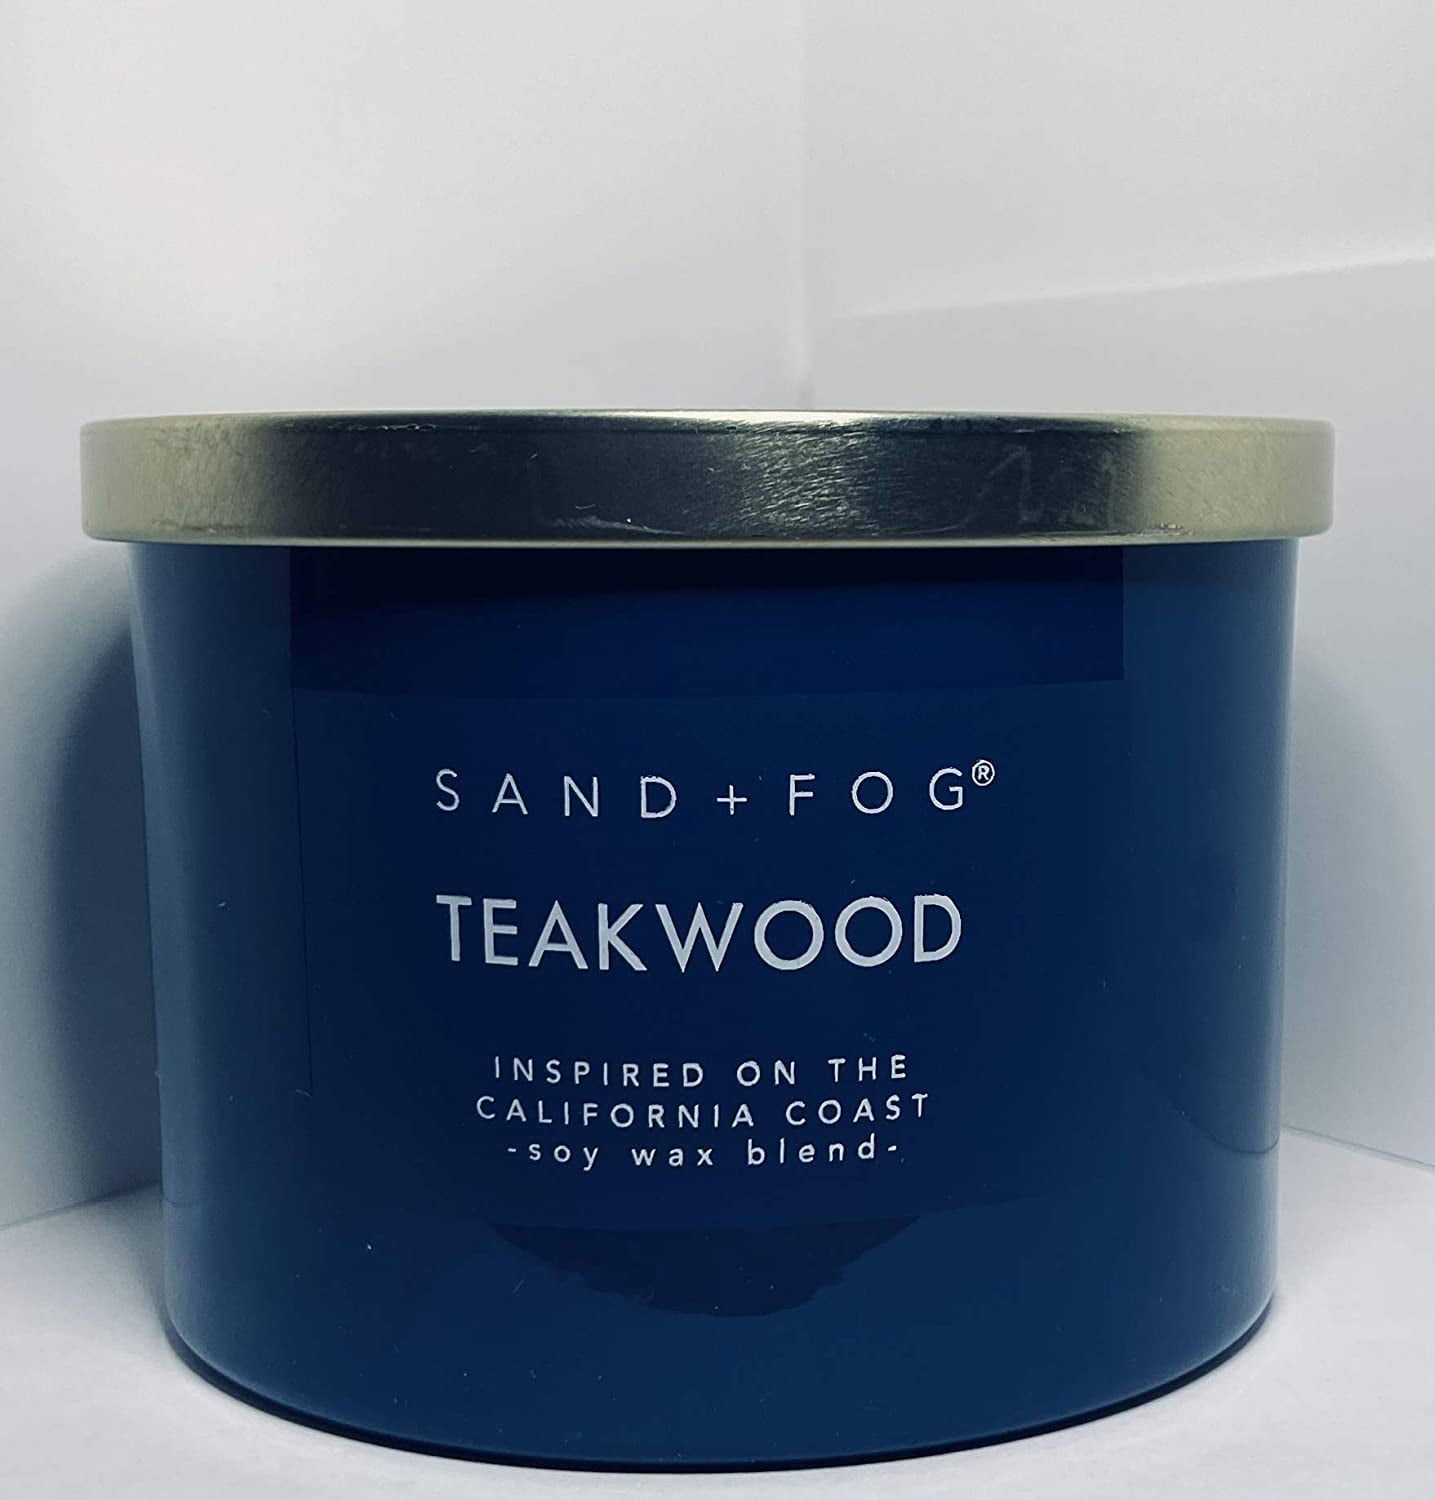 Sand + Fog Teakwood room spray